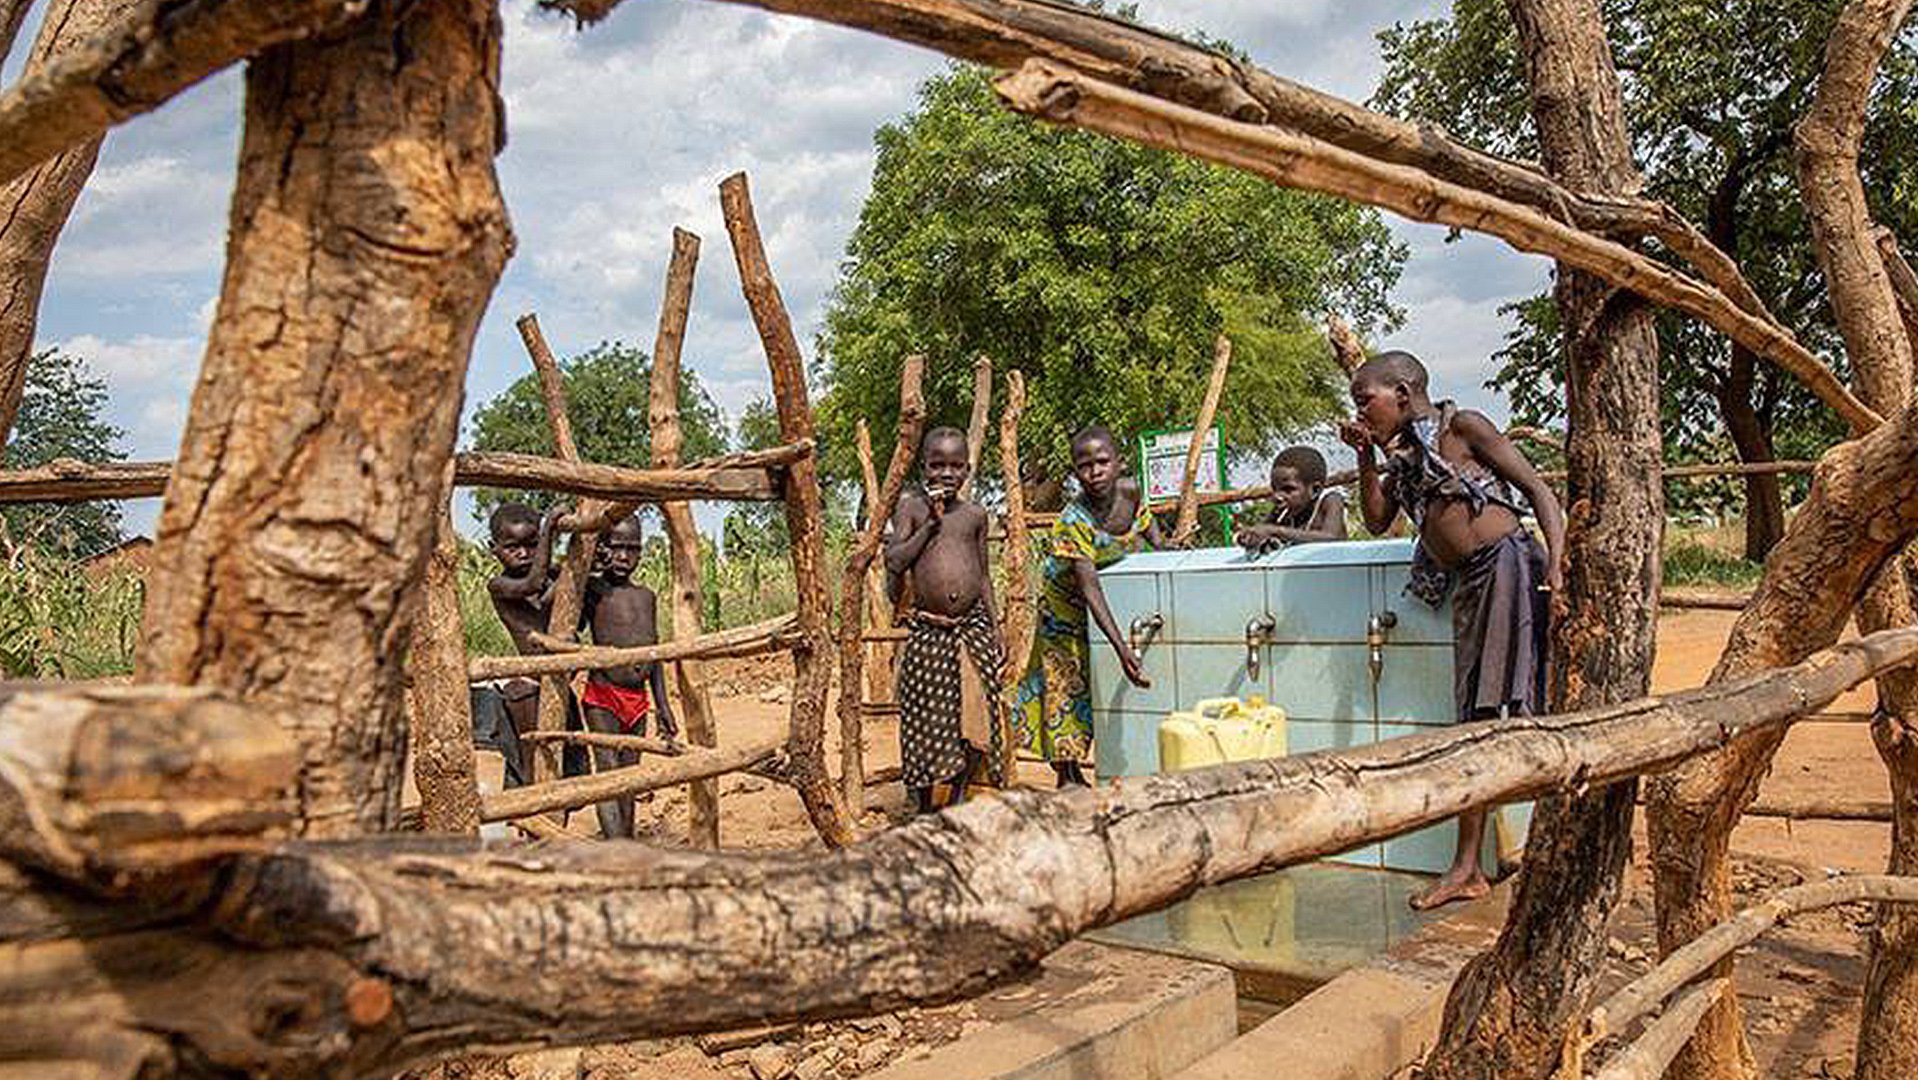 Water halen kinderen in Oeganda - buiten - War Child projecten